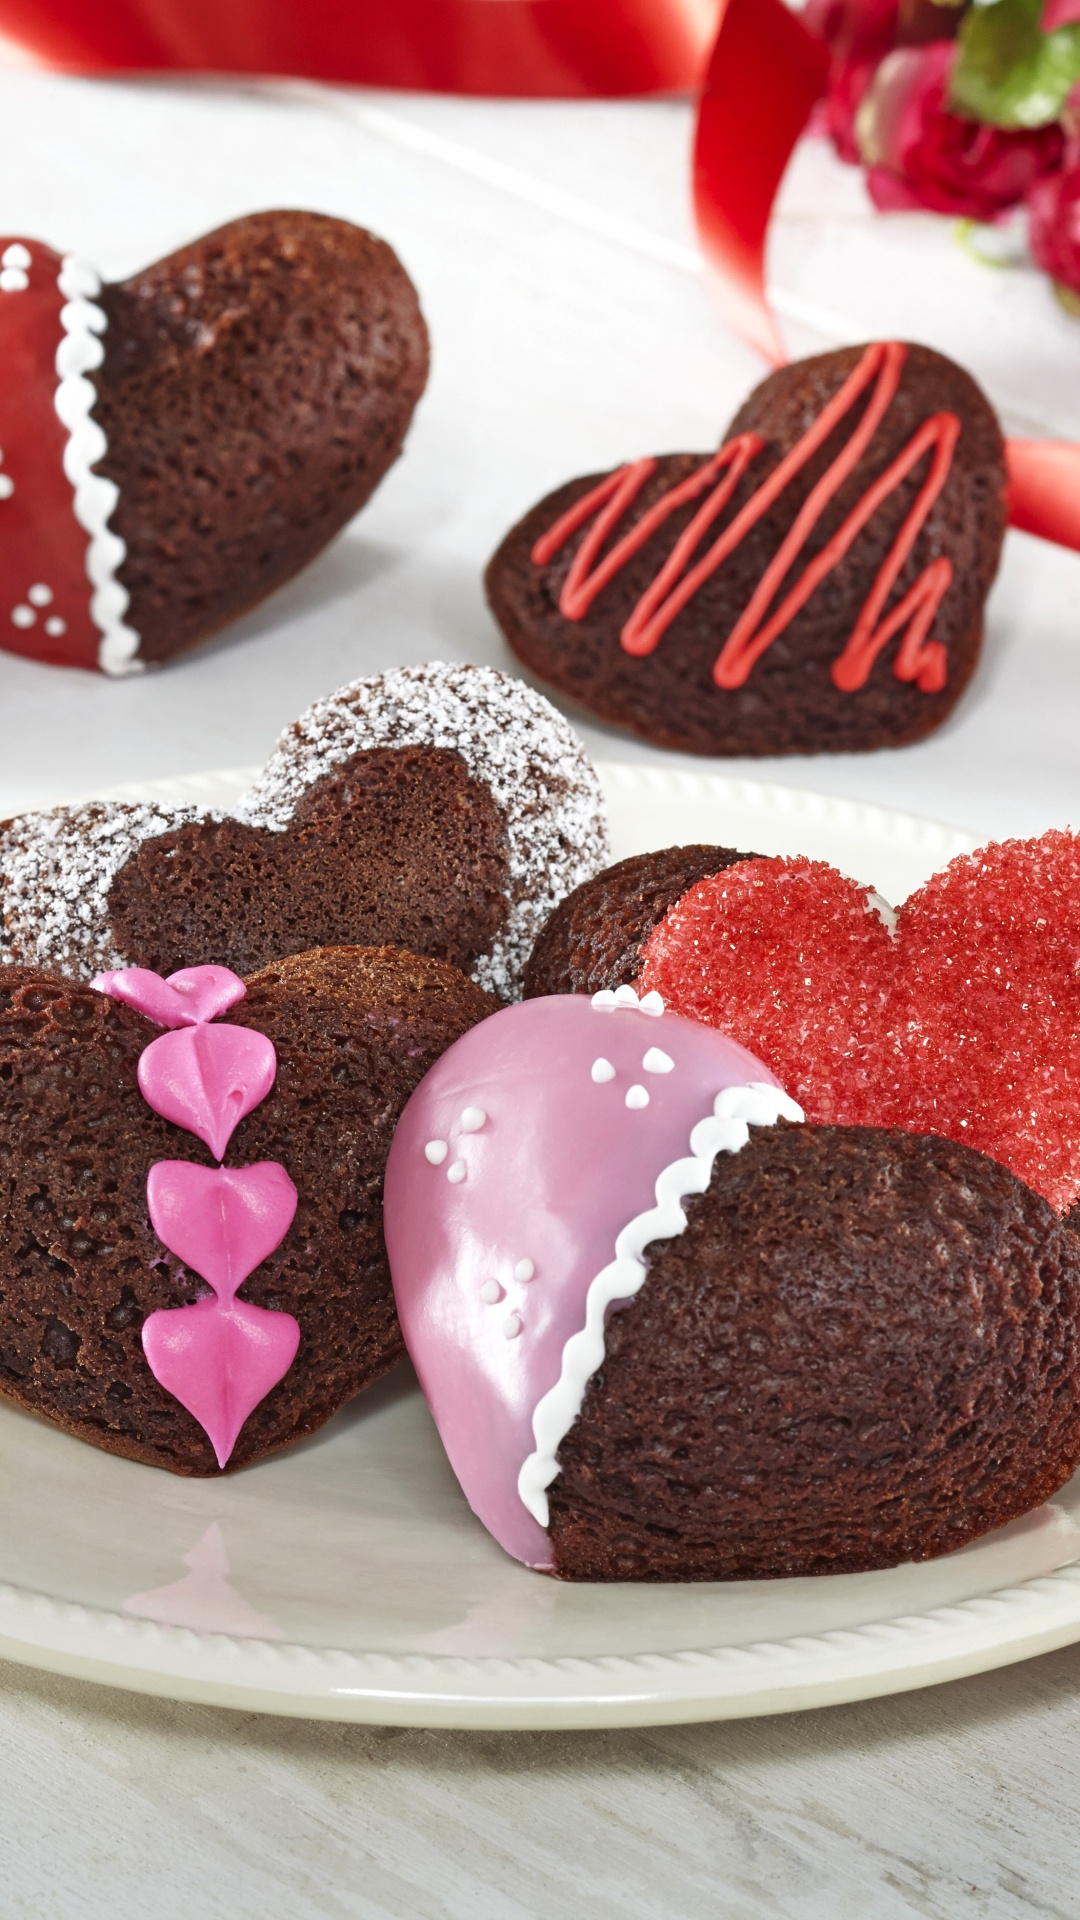 Gâteau au Chocolat, Dessert, le Jour de Valentines, Chocolat, Aliment. Wallpaper in 1080x1920 Resolution